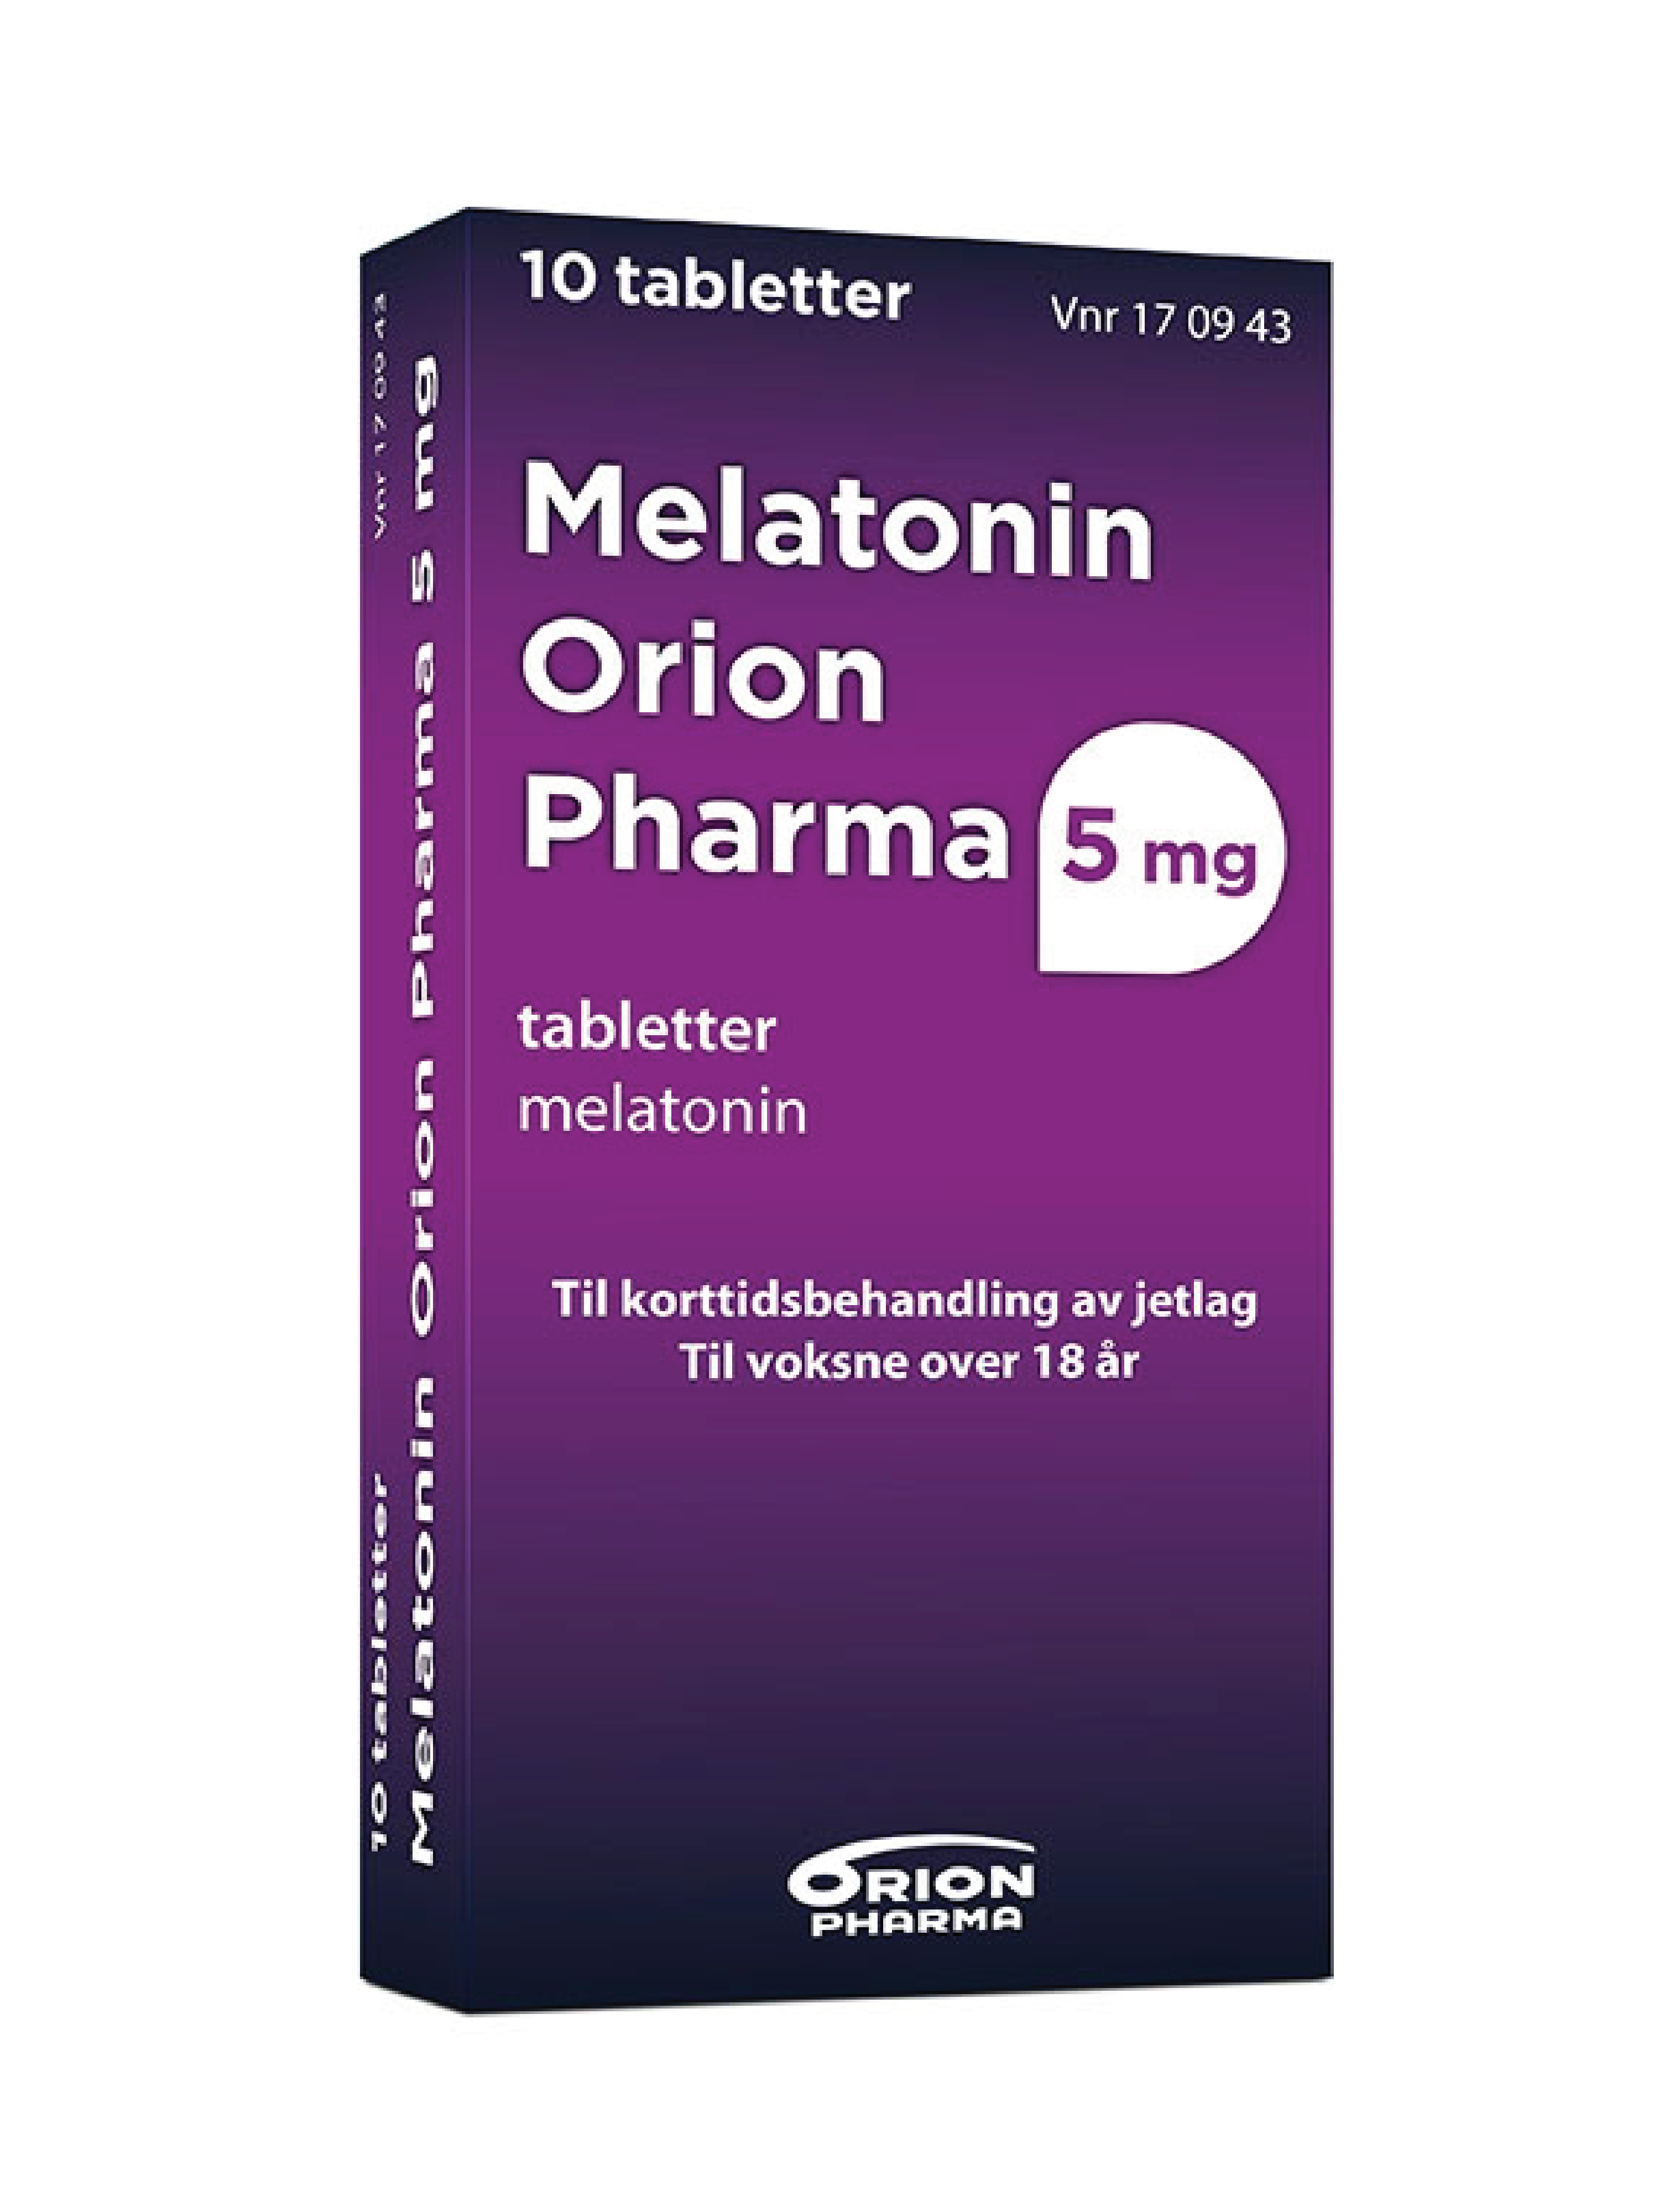 Melatonin Orion Pharma 5 mg tabletter, 10 stk.